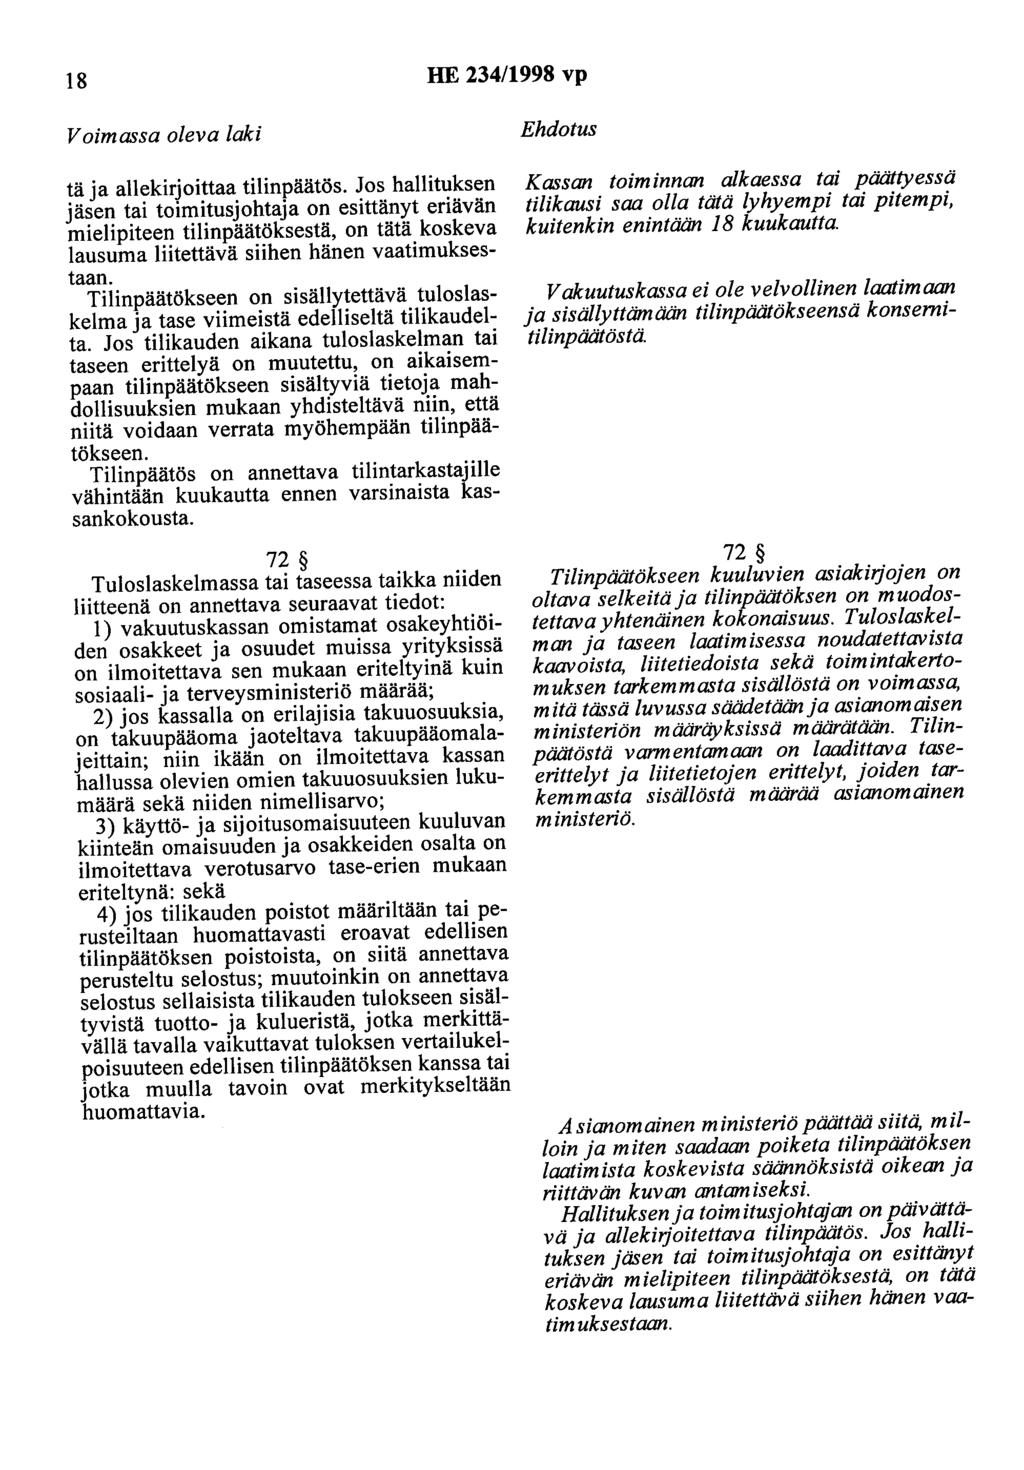 18 HE 234/1998 vp tä ja allekirjoittaa tilinpäätös.